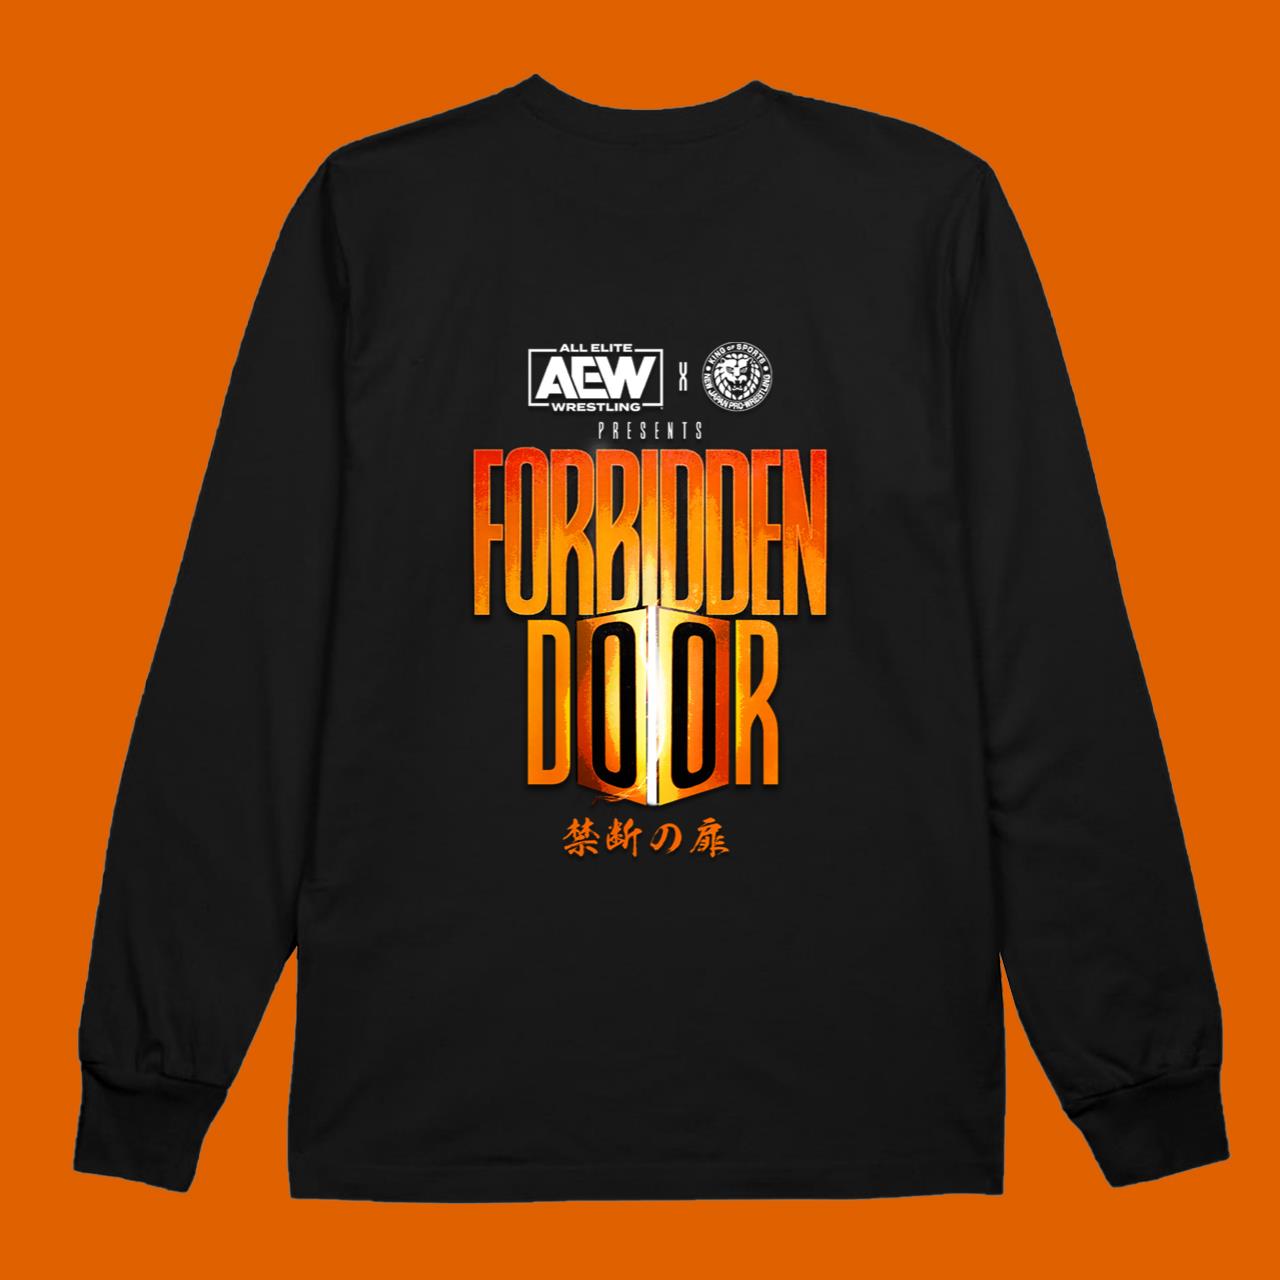 AWE Forbidden Door 2022 Active T-Shirt